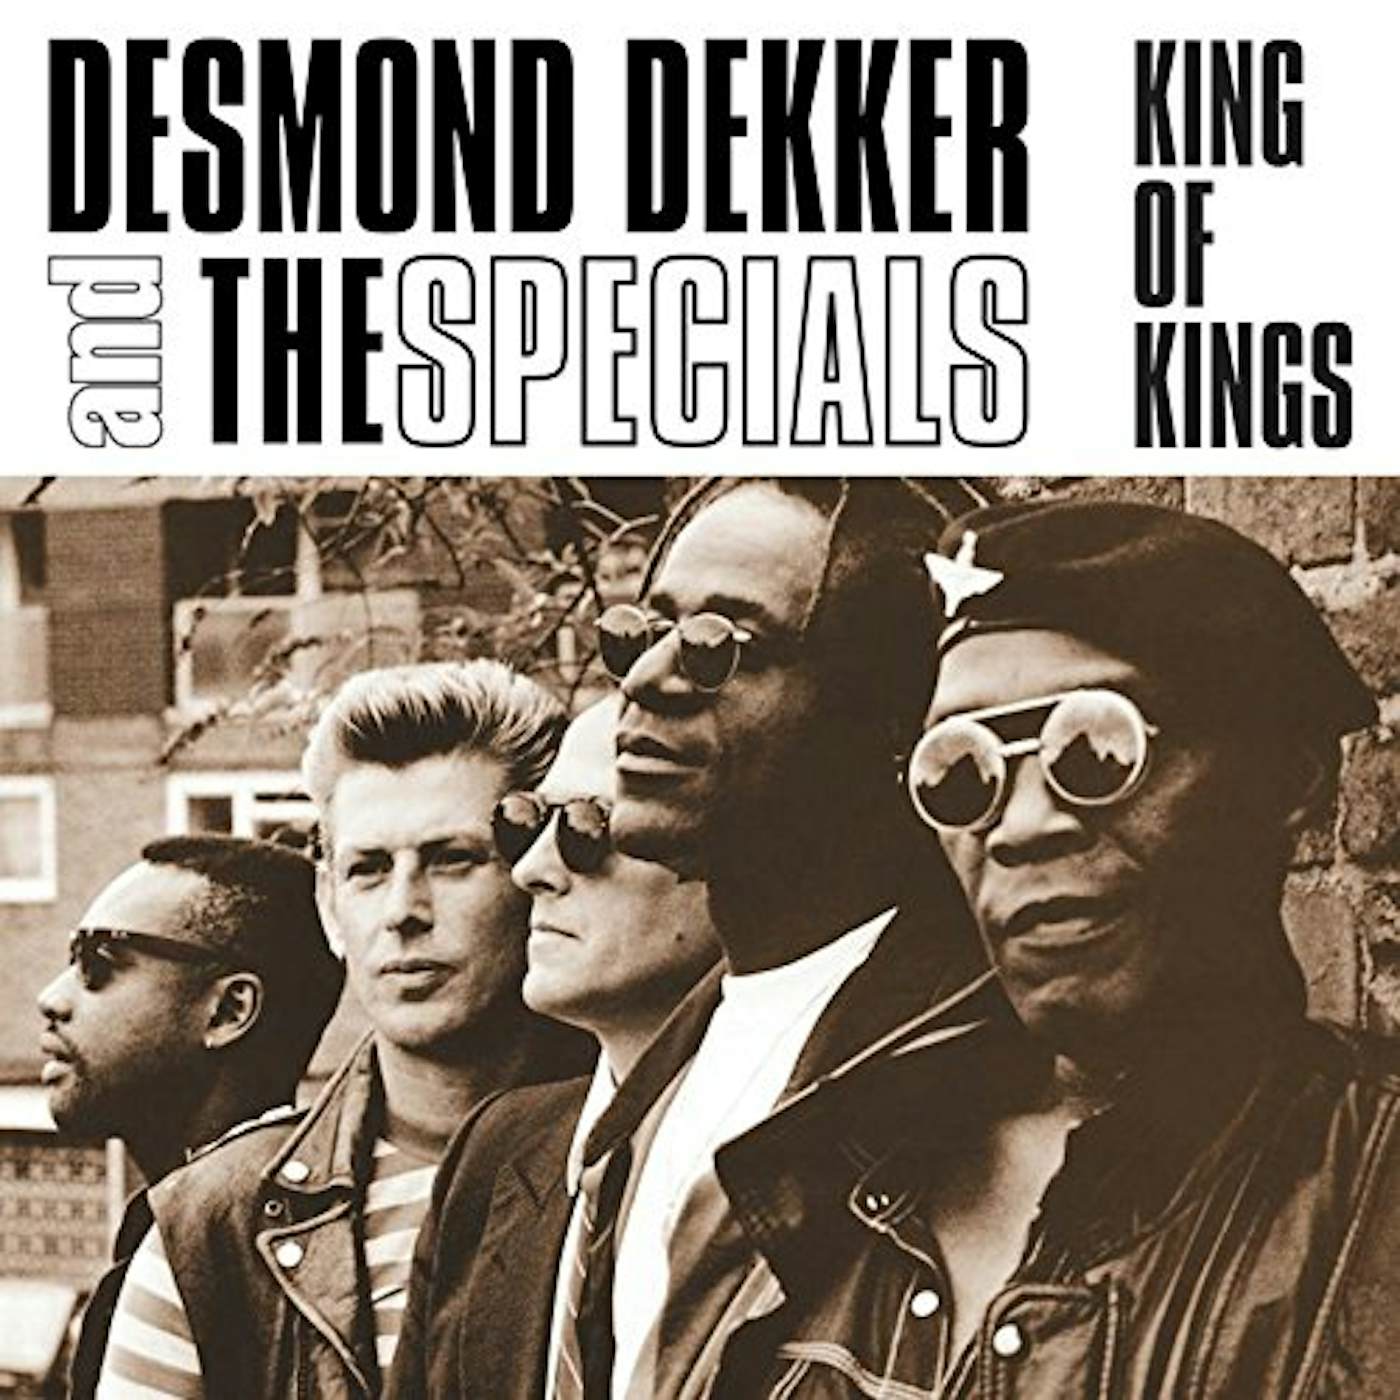 Desmond Dekker King of Kings Vinyl Record